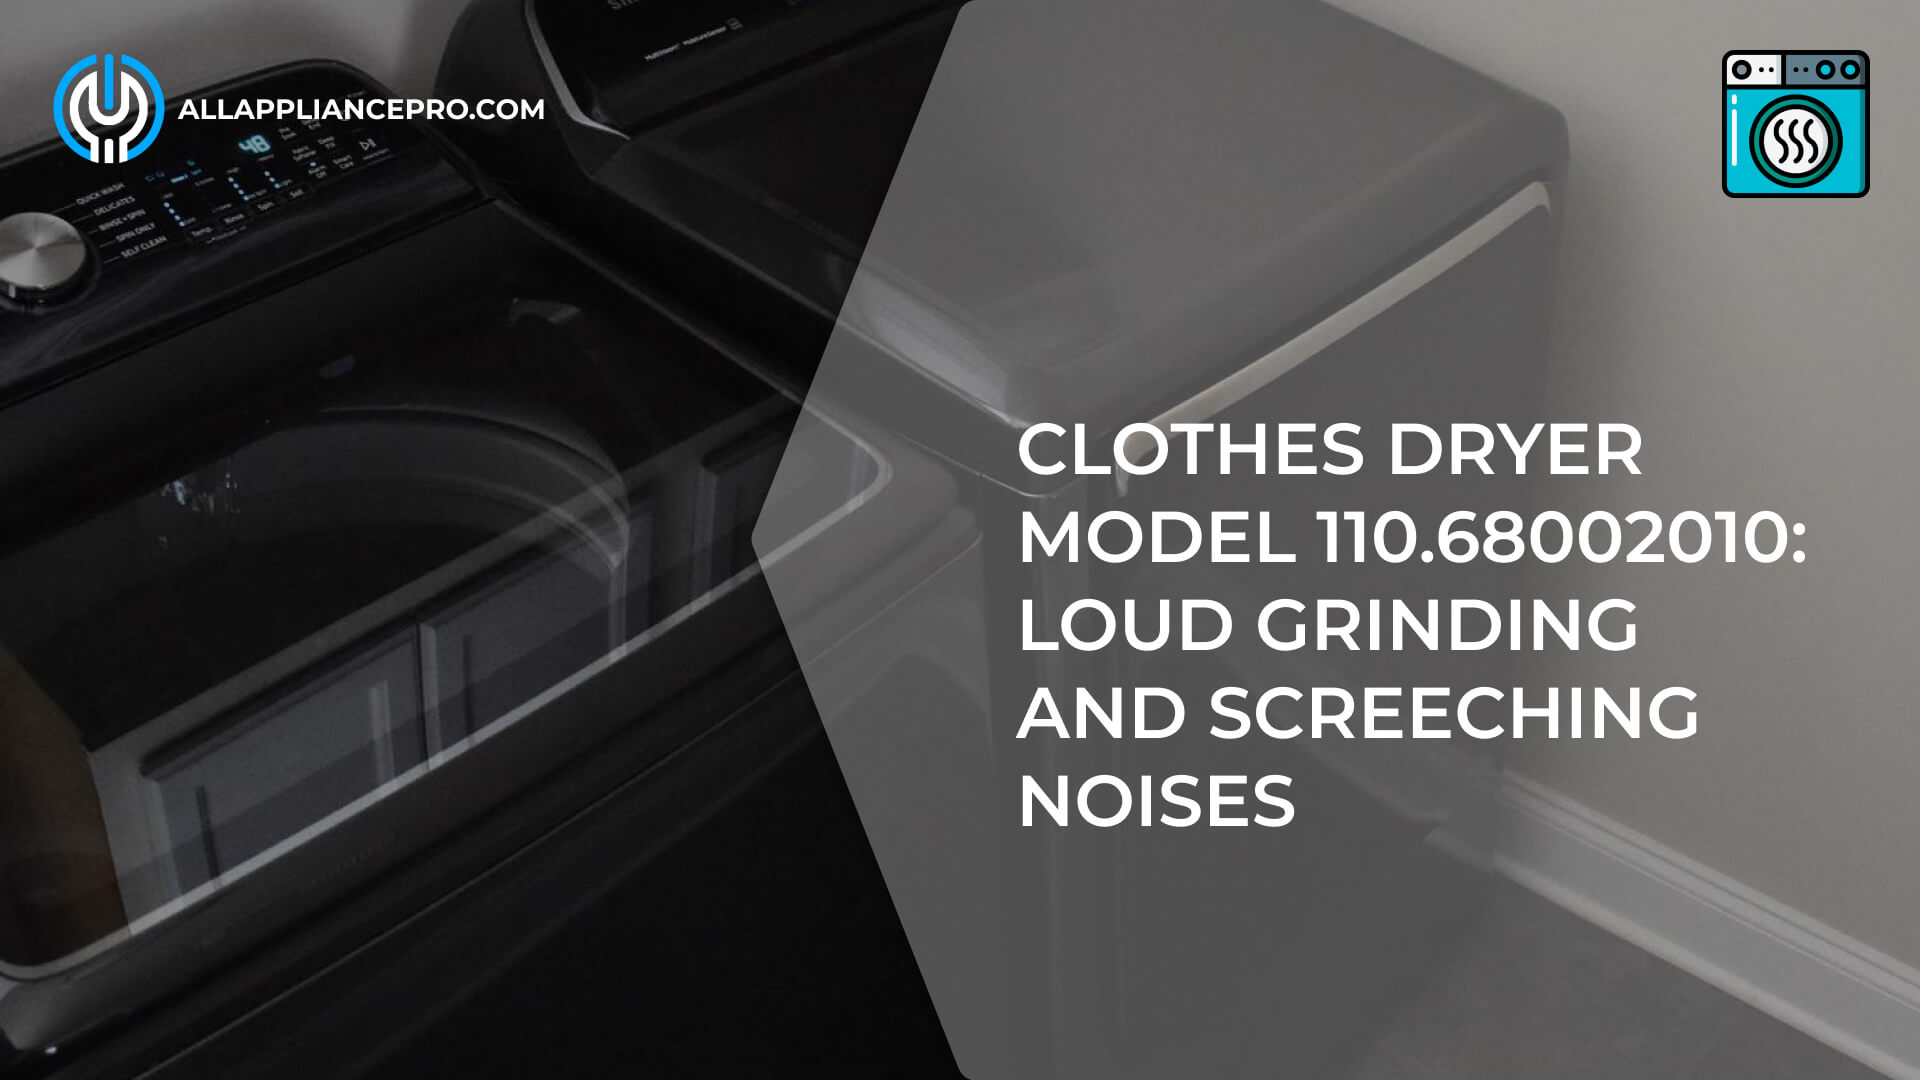 Clothes Dryer Model 110.68002010 Noises